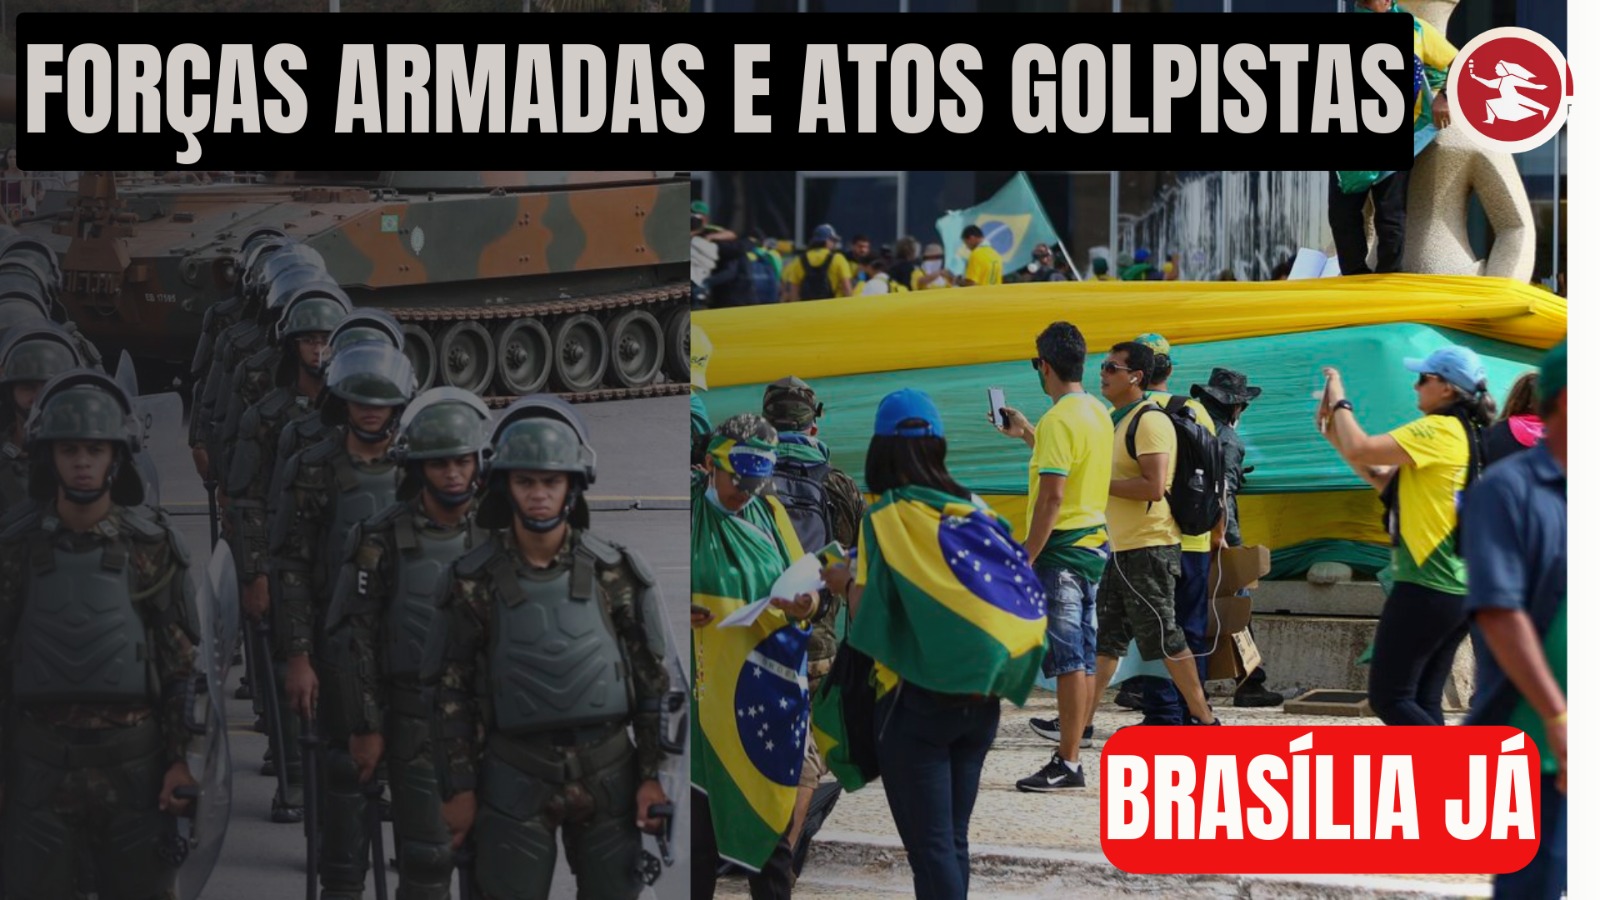 BRASÍLIA JÁ: Forças Armadas e atos golpistas: qual a responsabilidade?